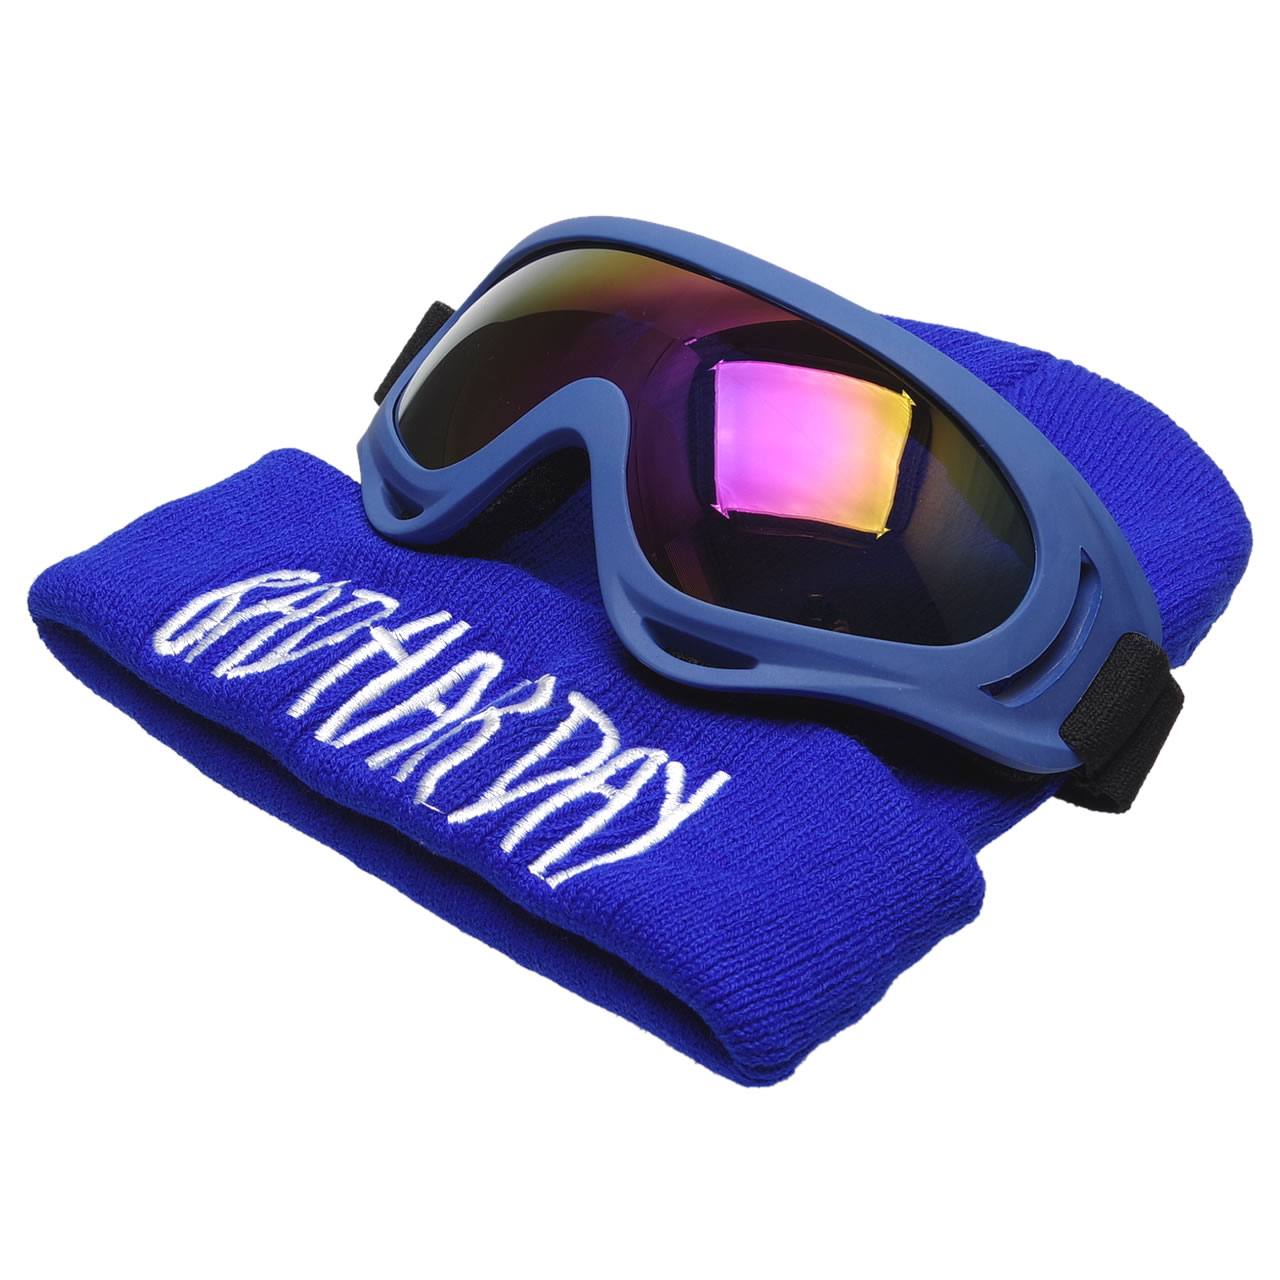 スノーボード ニット帽 ゴーグル セット 子供用 メンズ レディース フリーサイズ スキー